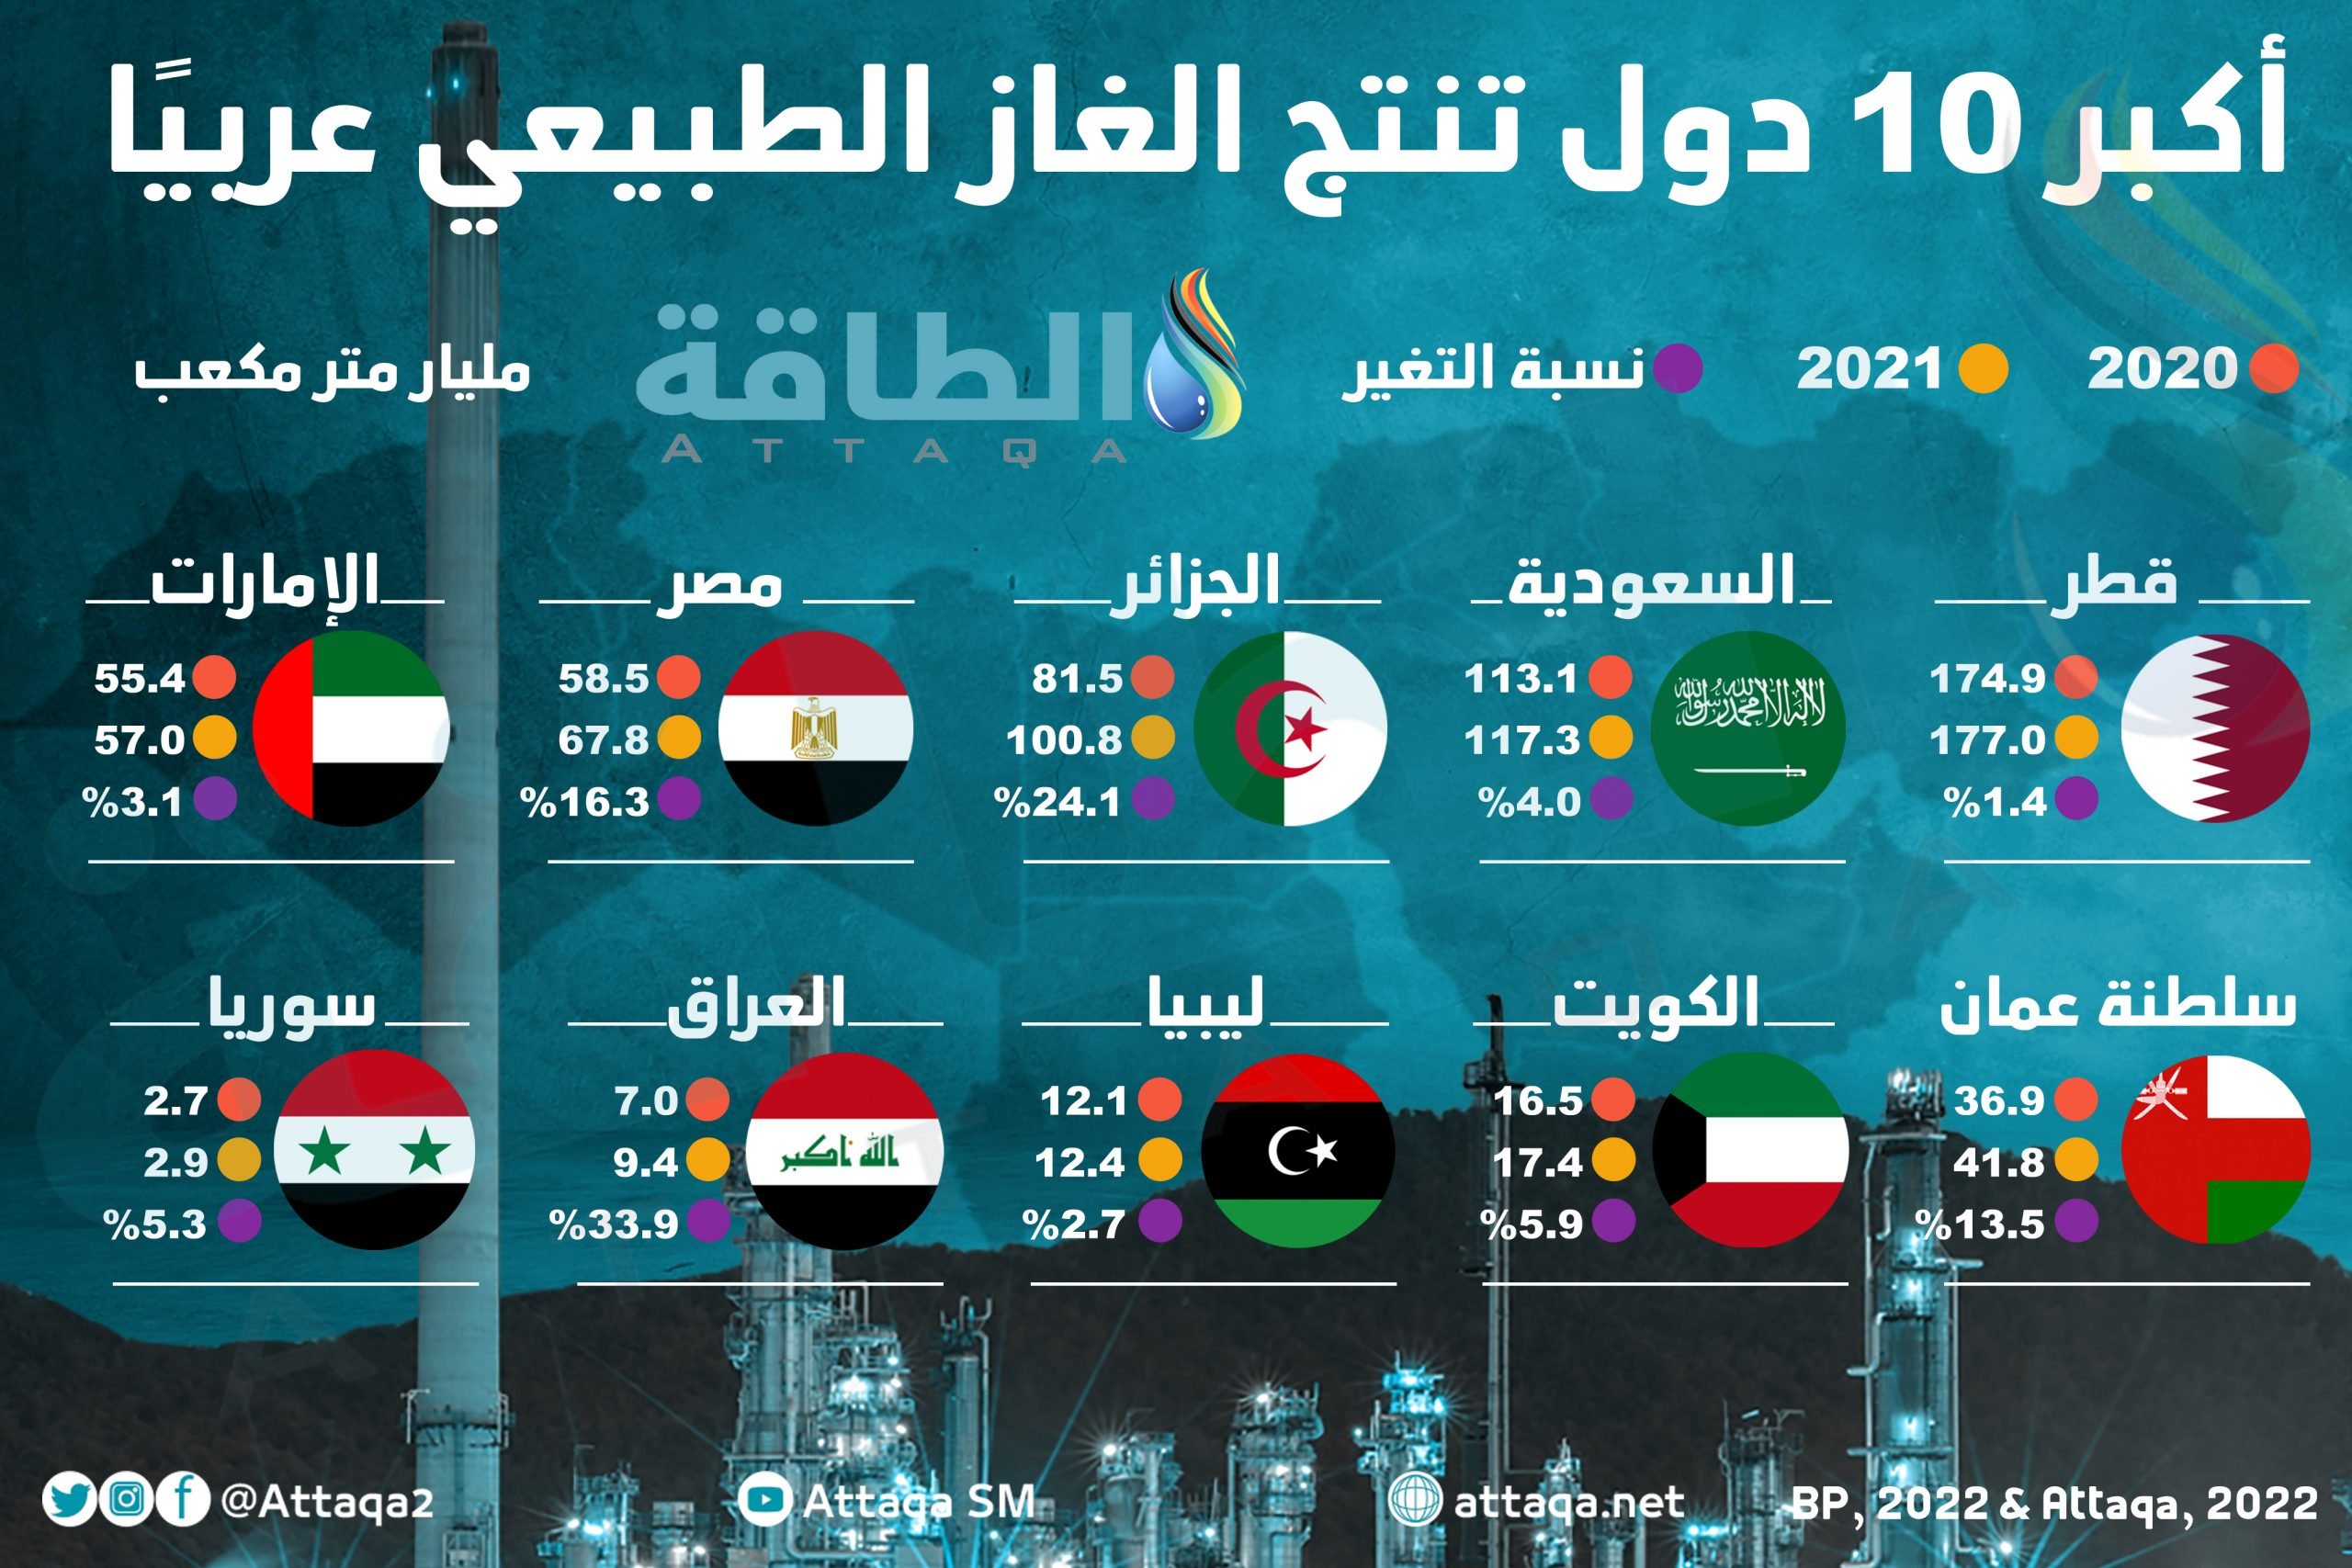 أكبر الدول العربية المنتجة للغاز